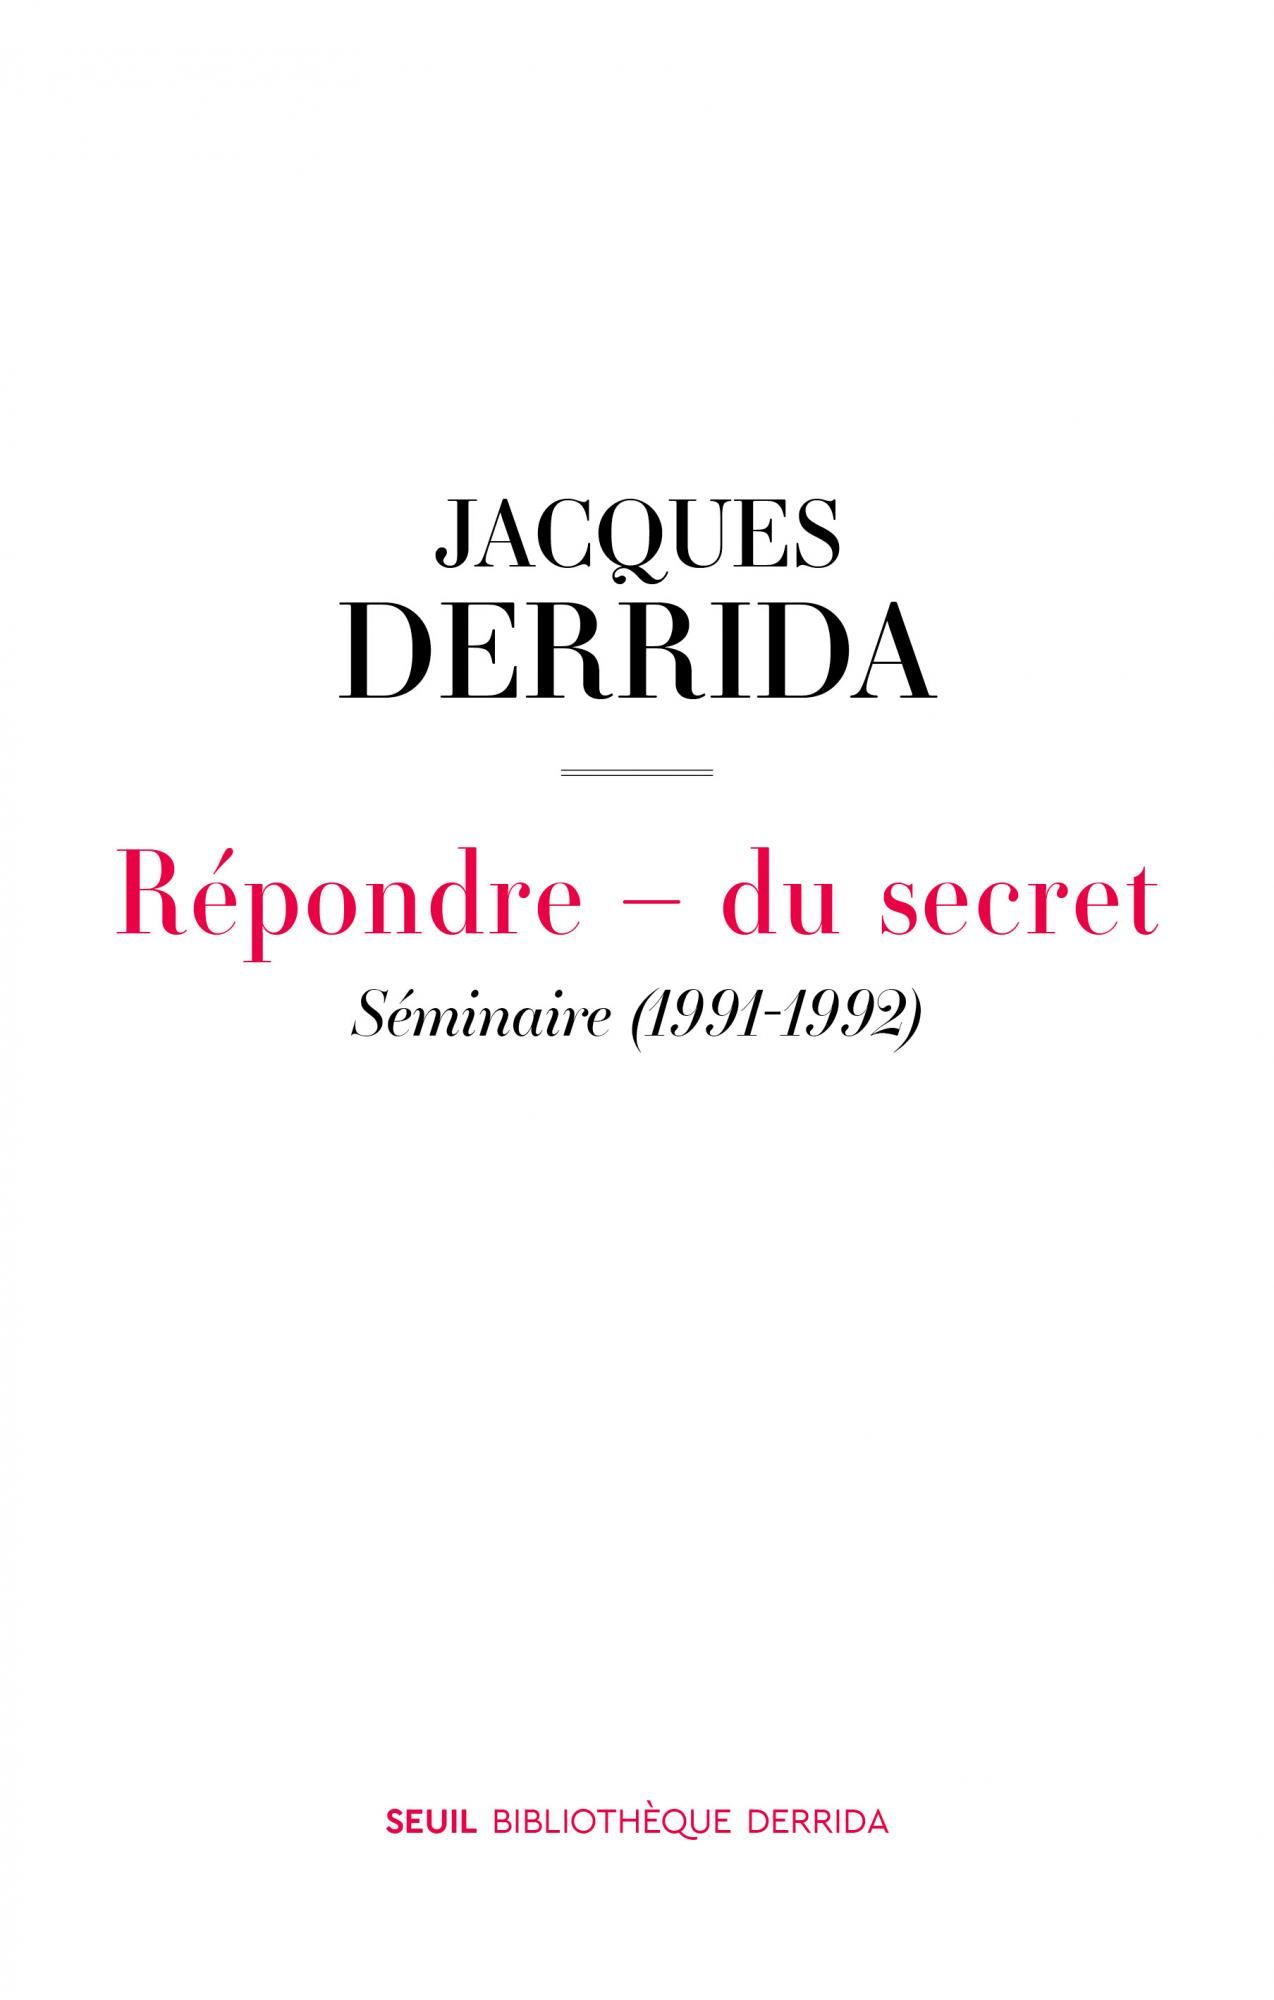 Jacques Derrida, Répondre - du secret. Séminaire (1991-1992)